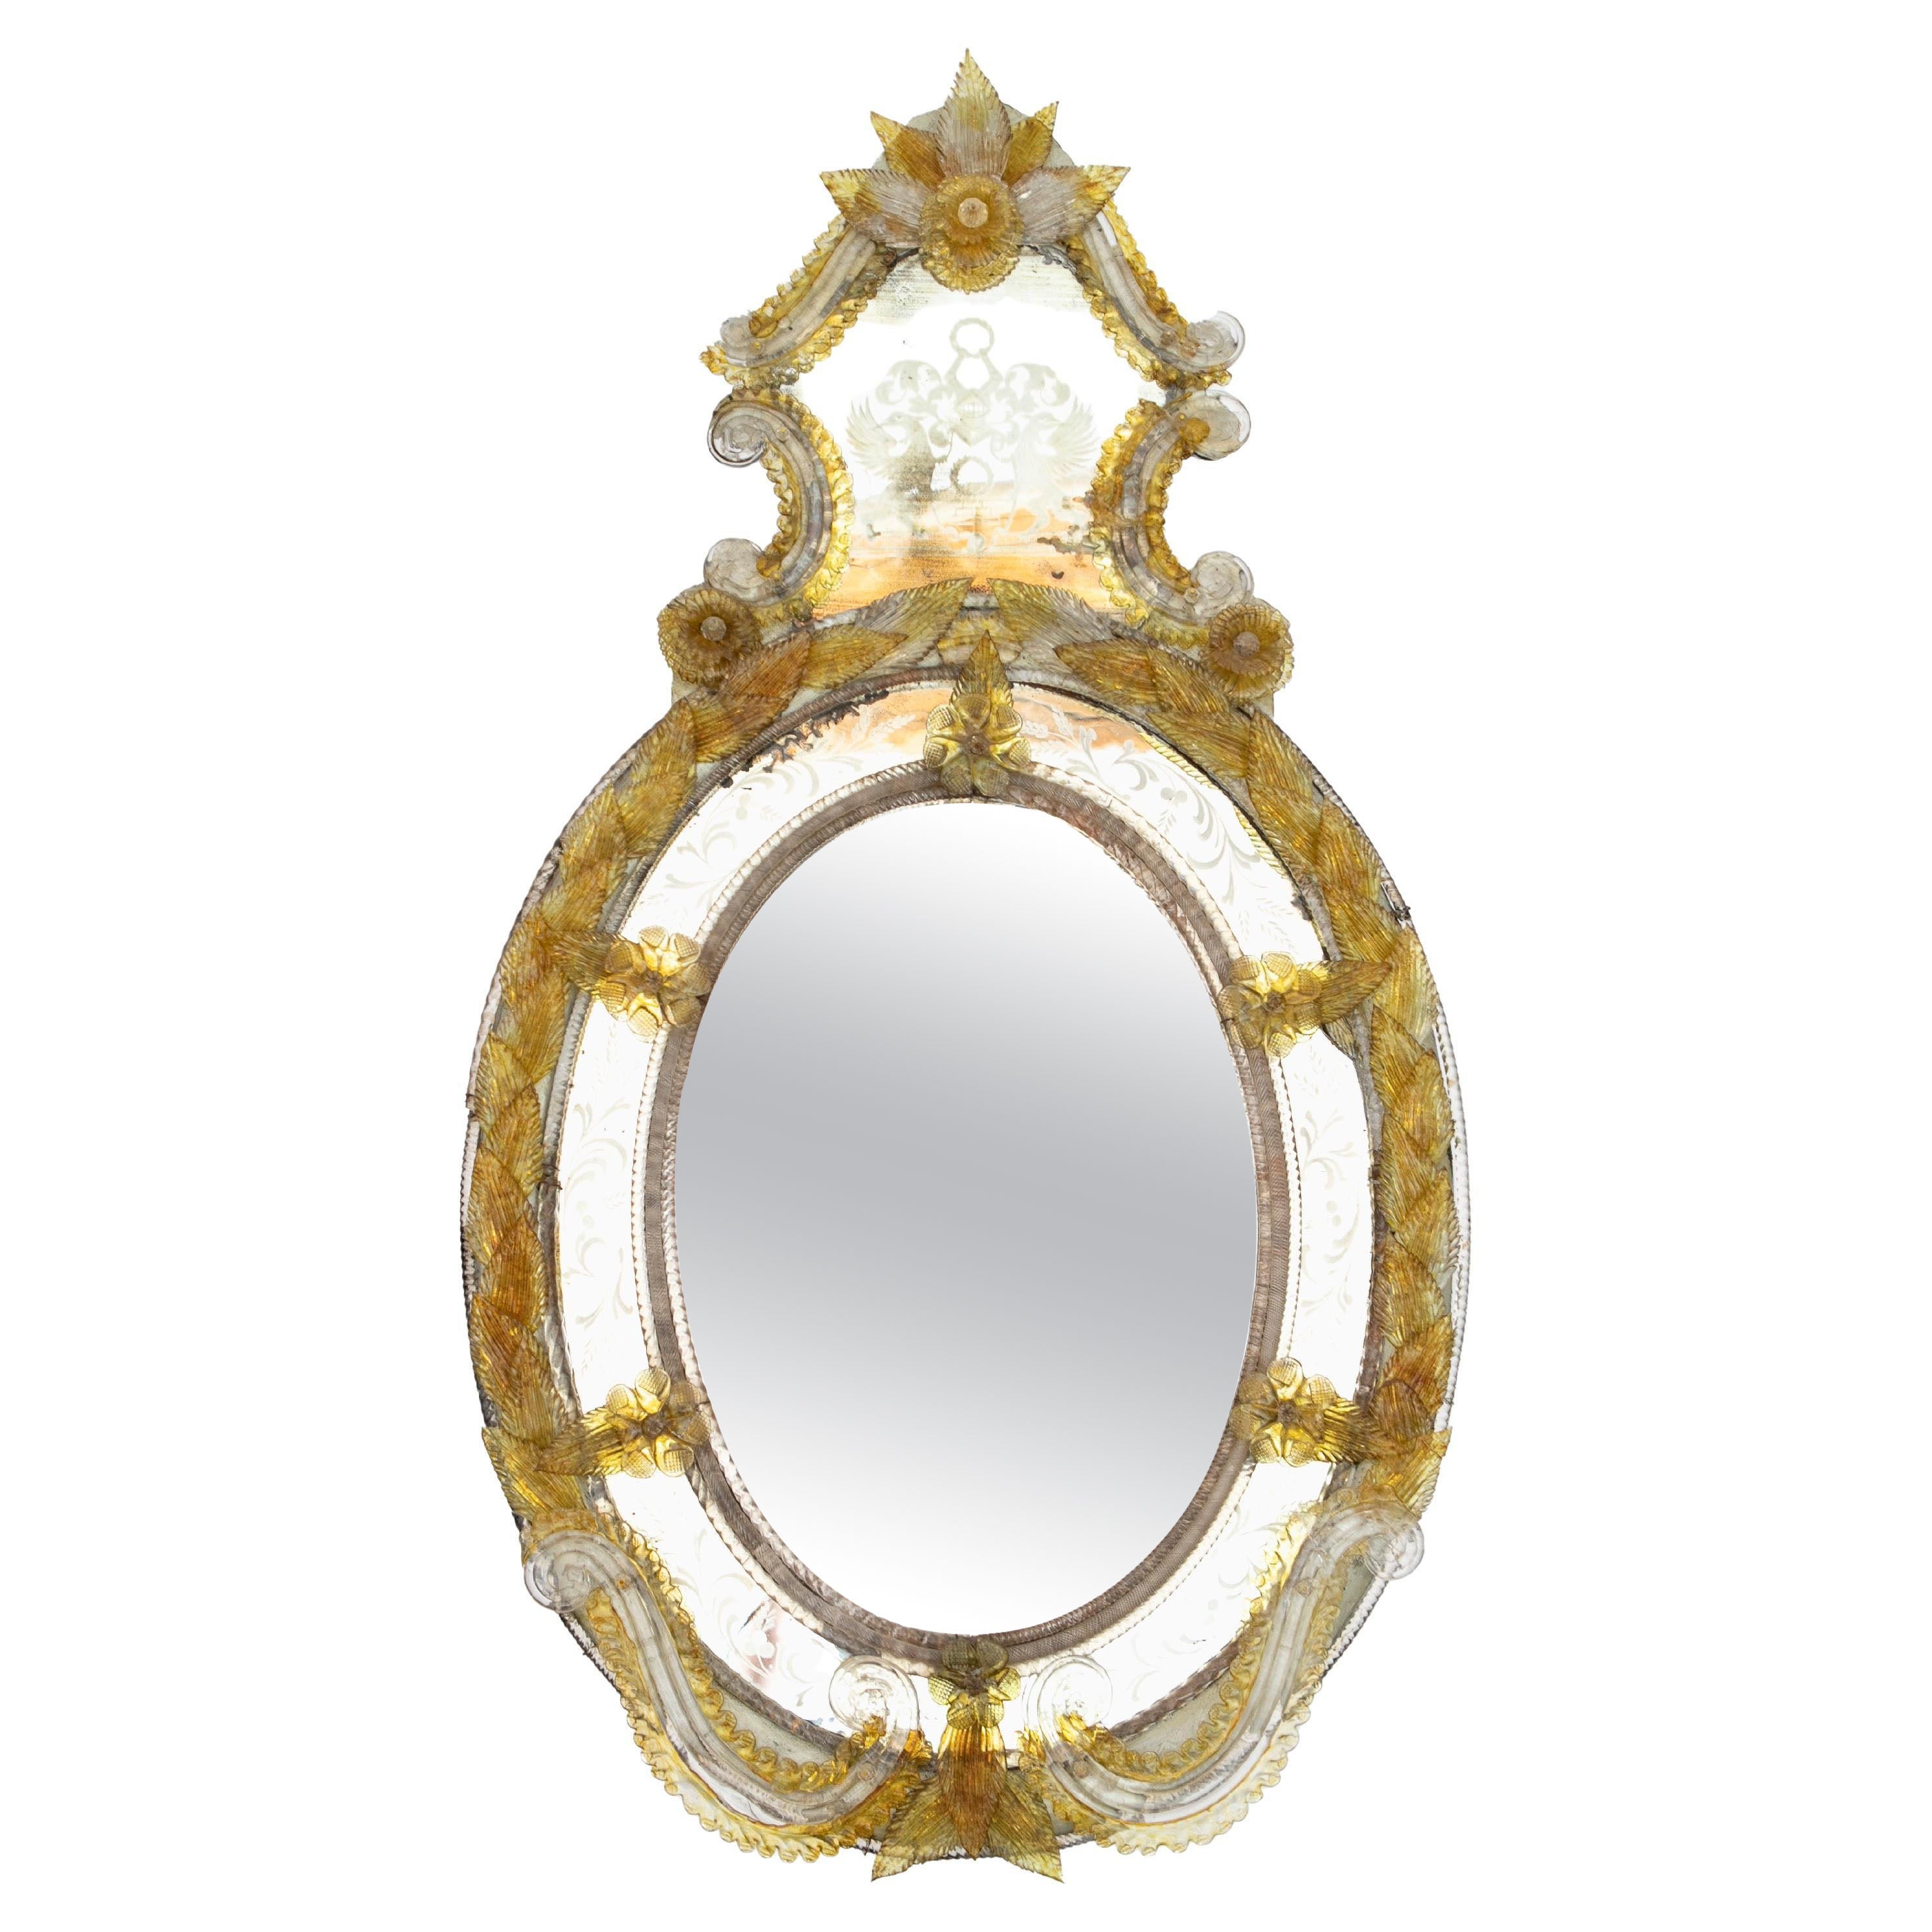 Ovaler venezianischer Spiegel aus gelbem und klarem Muranoglas